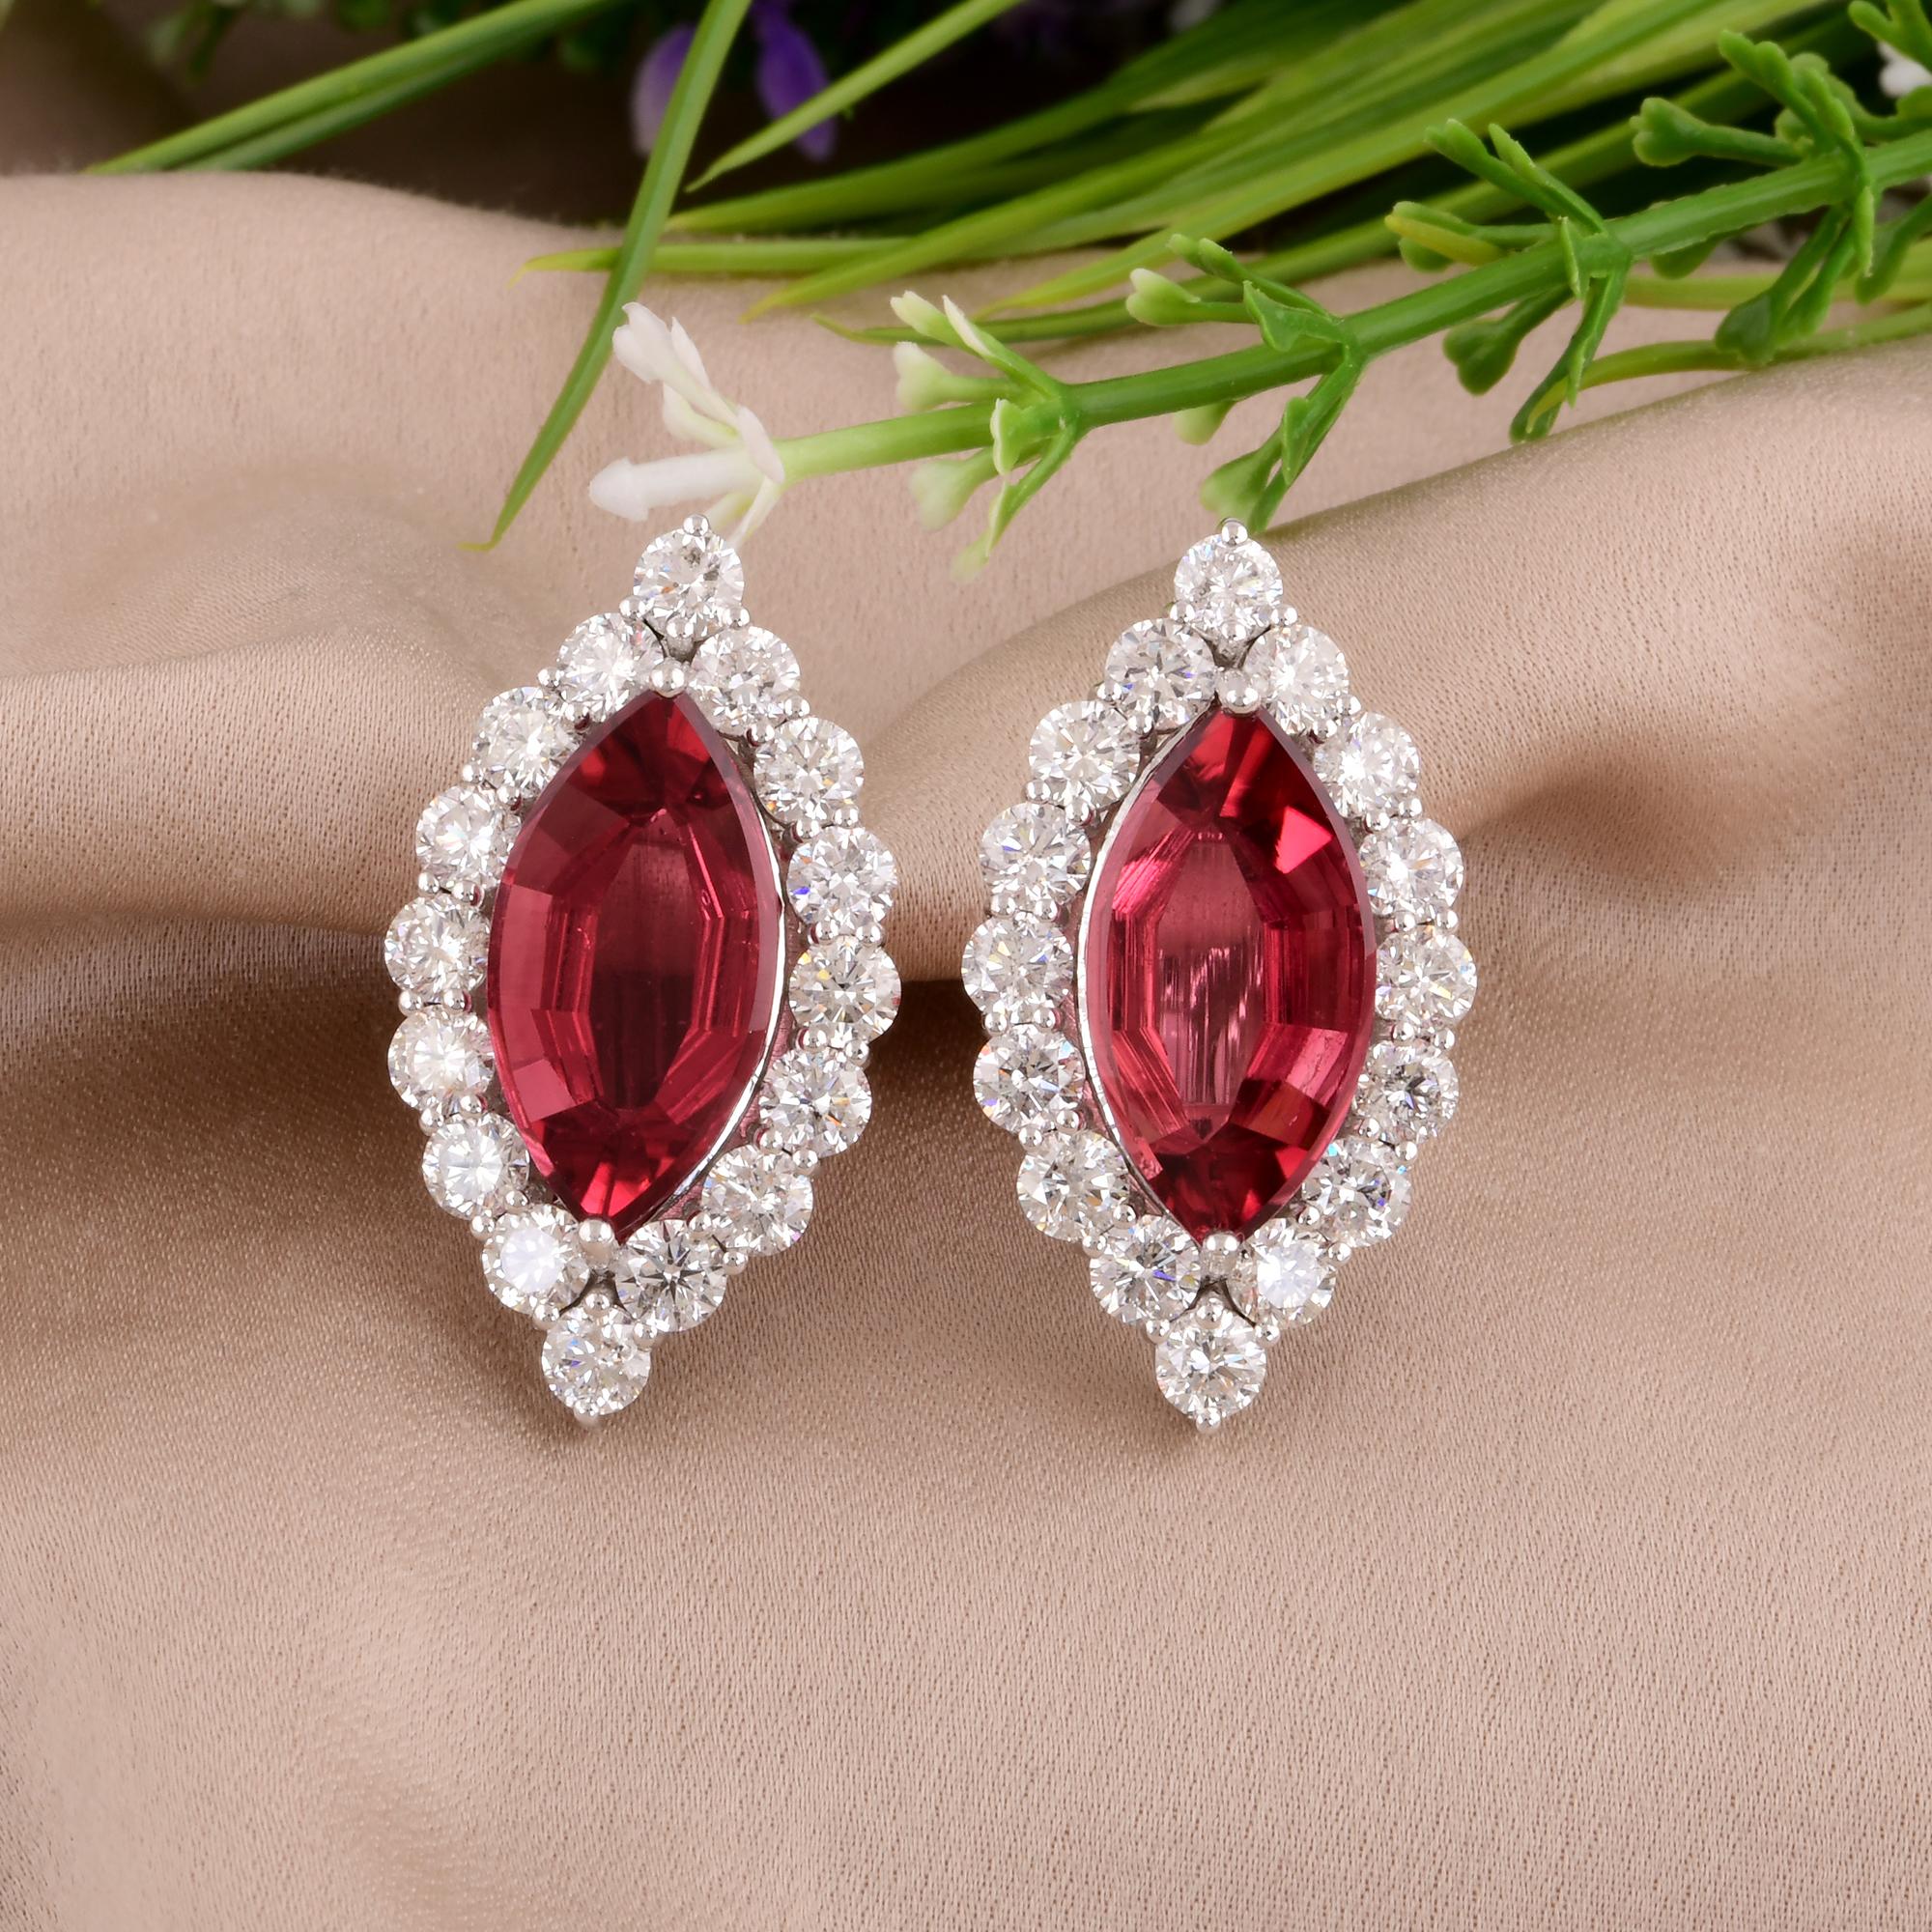 Heben Sie Ihren Stil hervor und unterstreichen Sie die Schönheit der Weiblichkeit mit diesen Ohrringen mit echten rosa Turmalin-Edelsteinen. Als Symbol der Liebe, der Anmut und der zeitlosen Eleganz sind sie ein Muss für jede